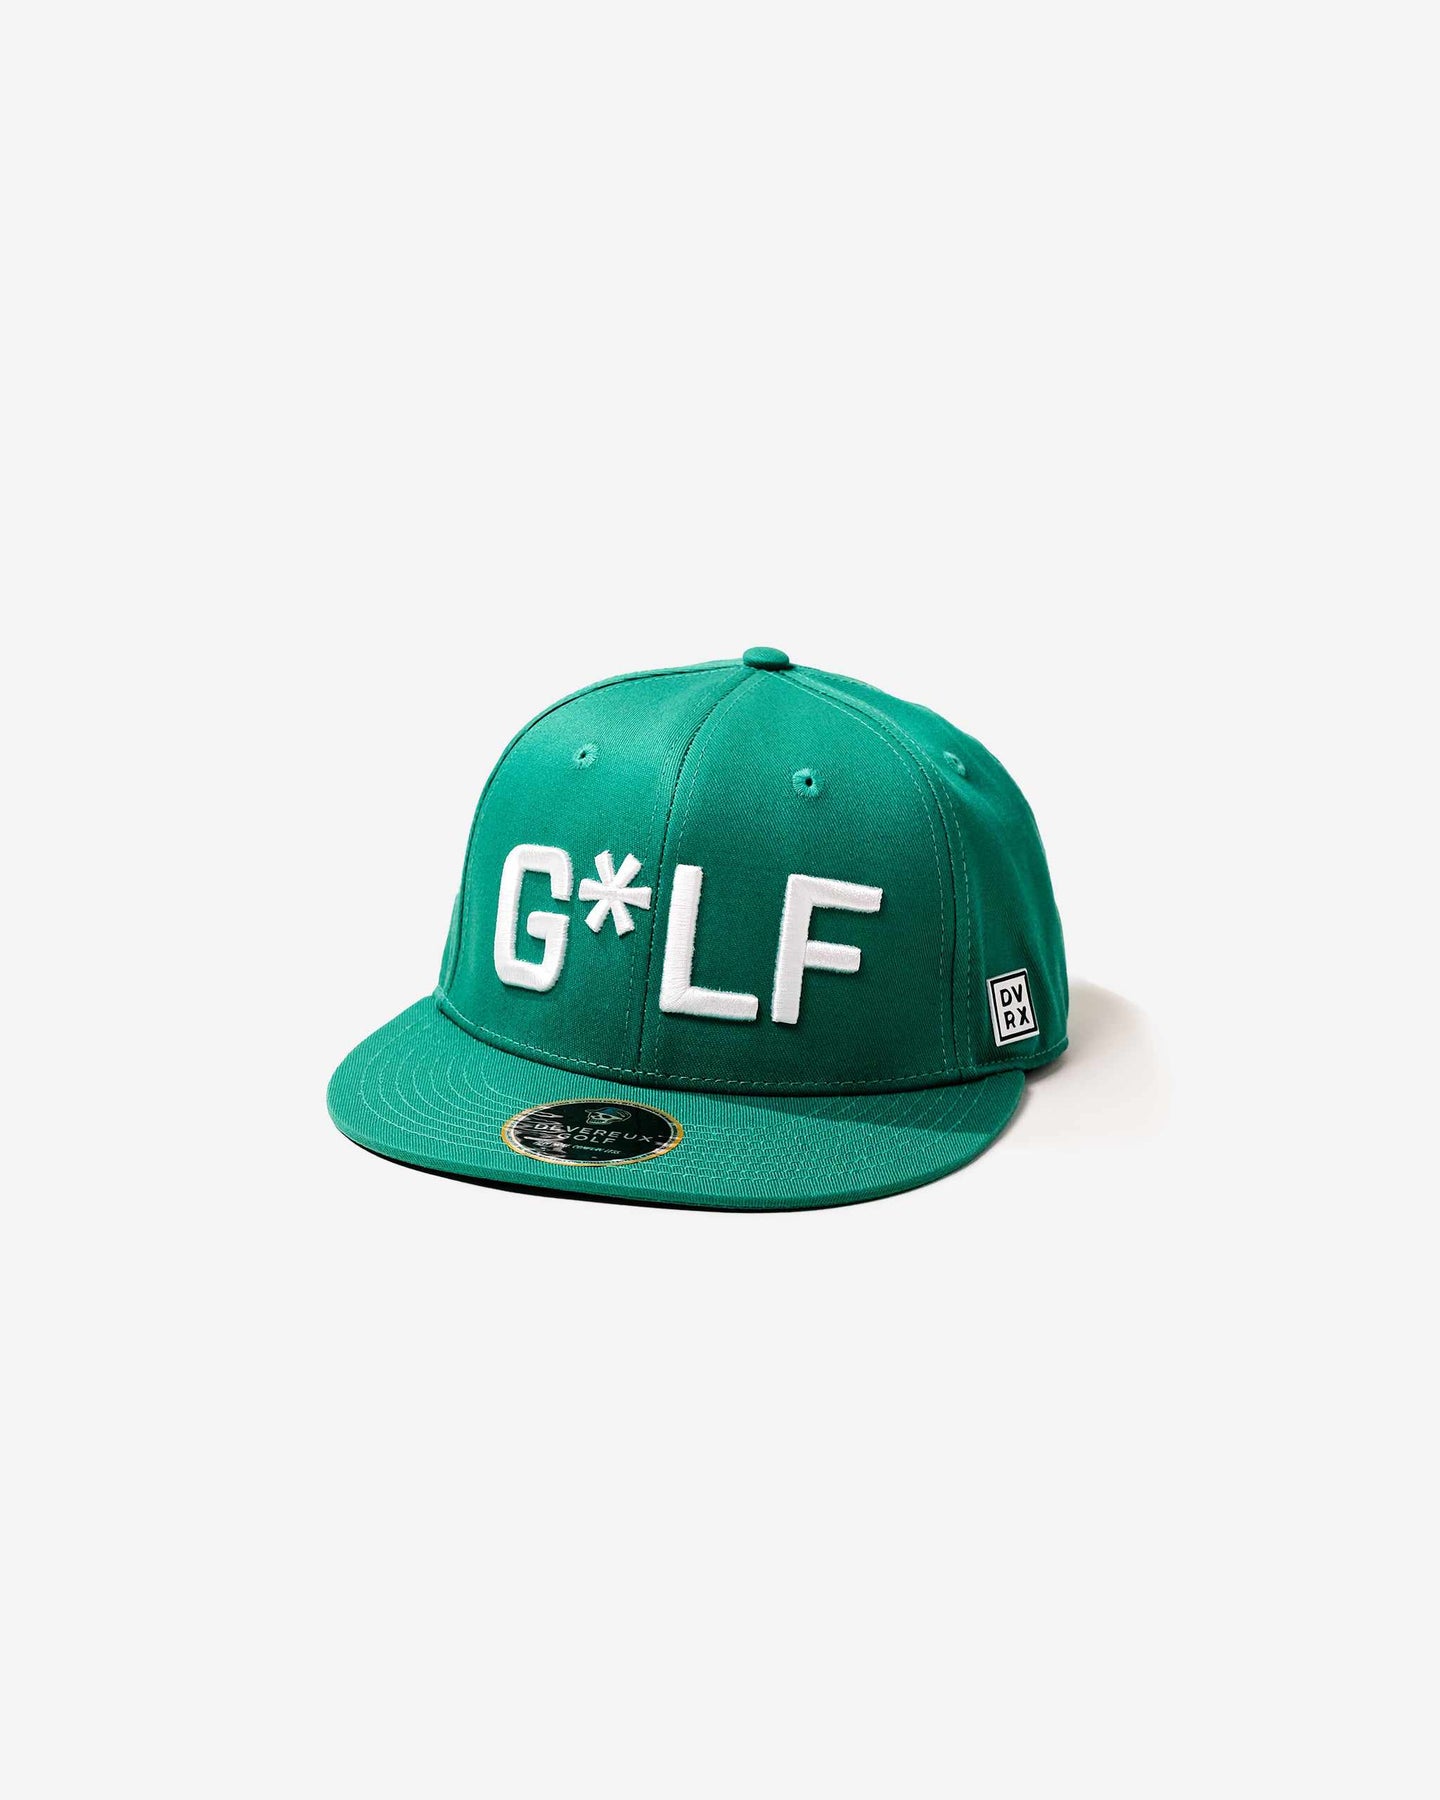 G*LF Hat - Teal – Devereux